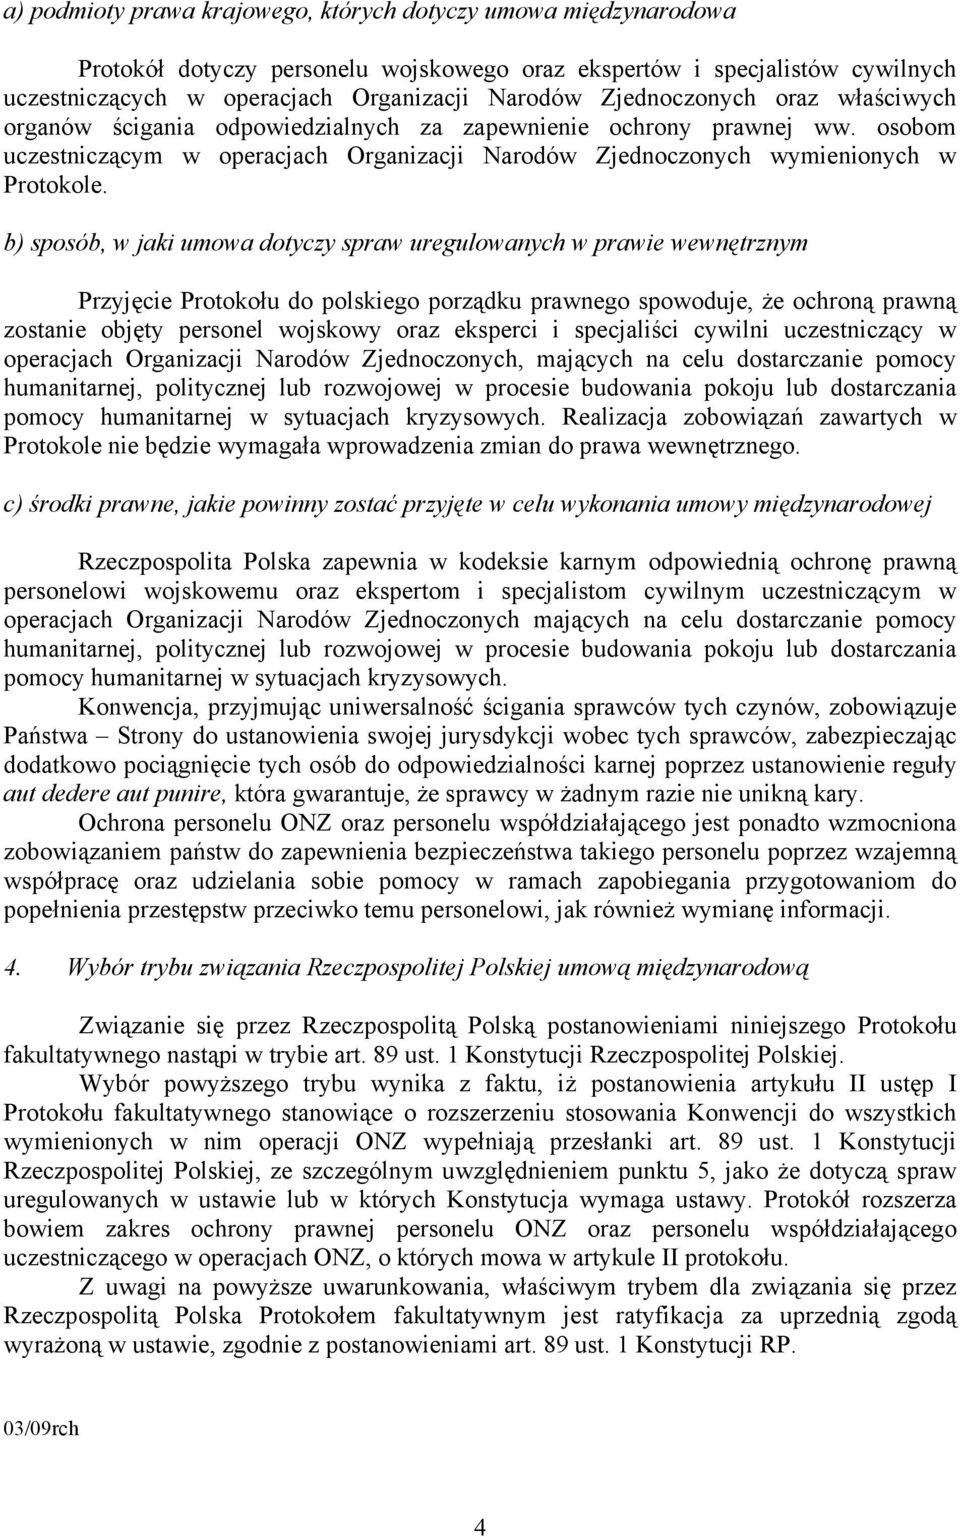 b) sposób, w jaki umowa dotyczy spraw uregulowanych w prawie wewnętrznym Przyjęcie Protokołu do polskiego porządku prawnego spowoduje, że ochroną prawną zostanie objęty personel wojskowy oraz